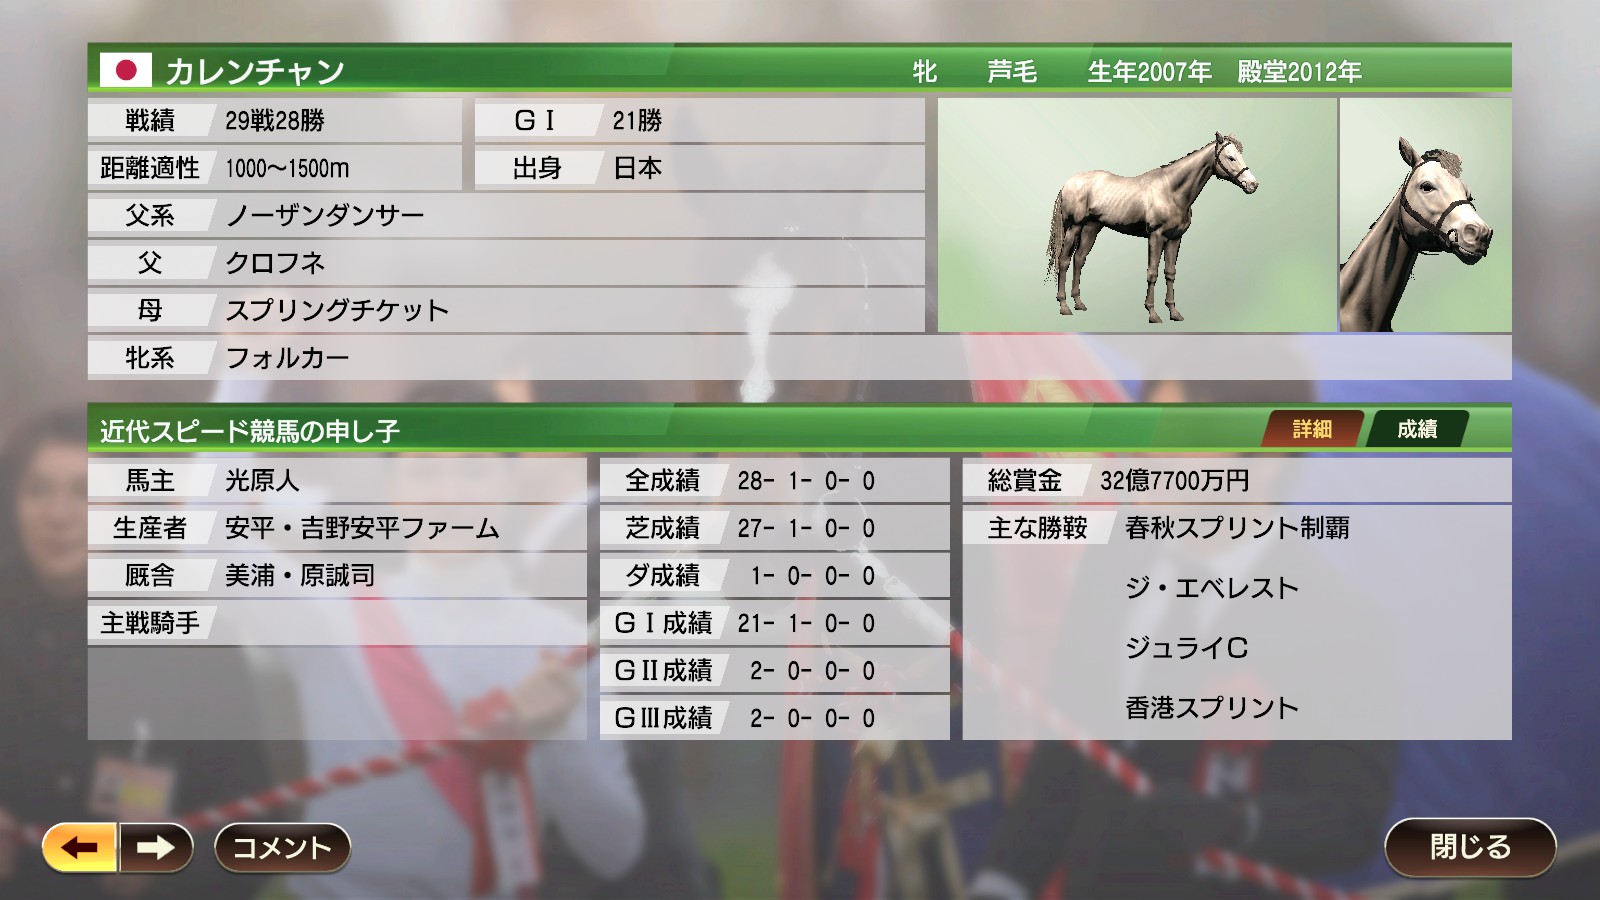 9 馬 ウイニングポスト 史実 【ウイニングポスト9】2008年1月2週分の海外おすすめ競走馬(2007年産駒)データ一覧